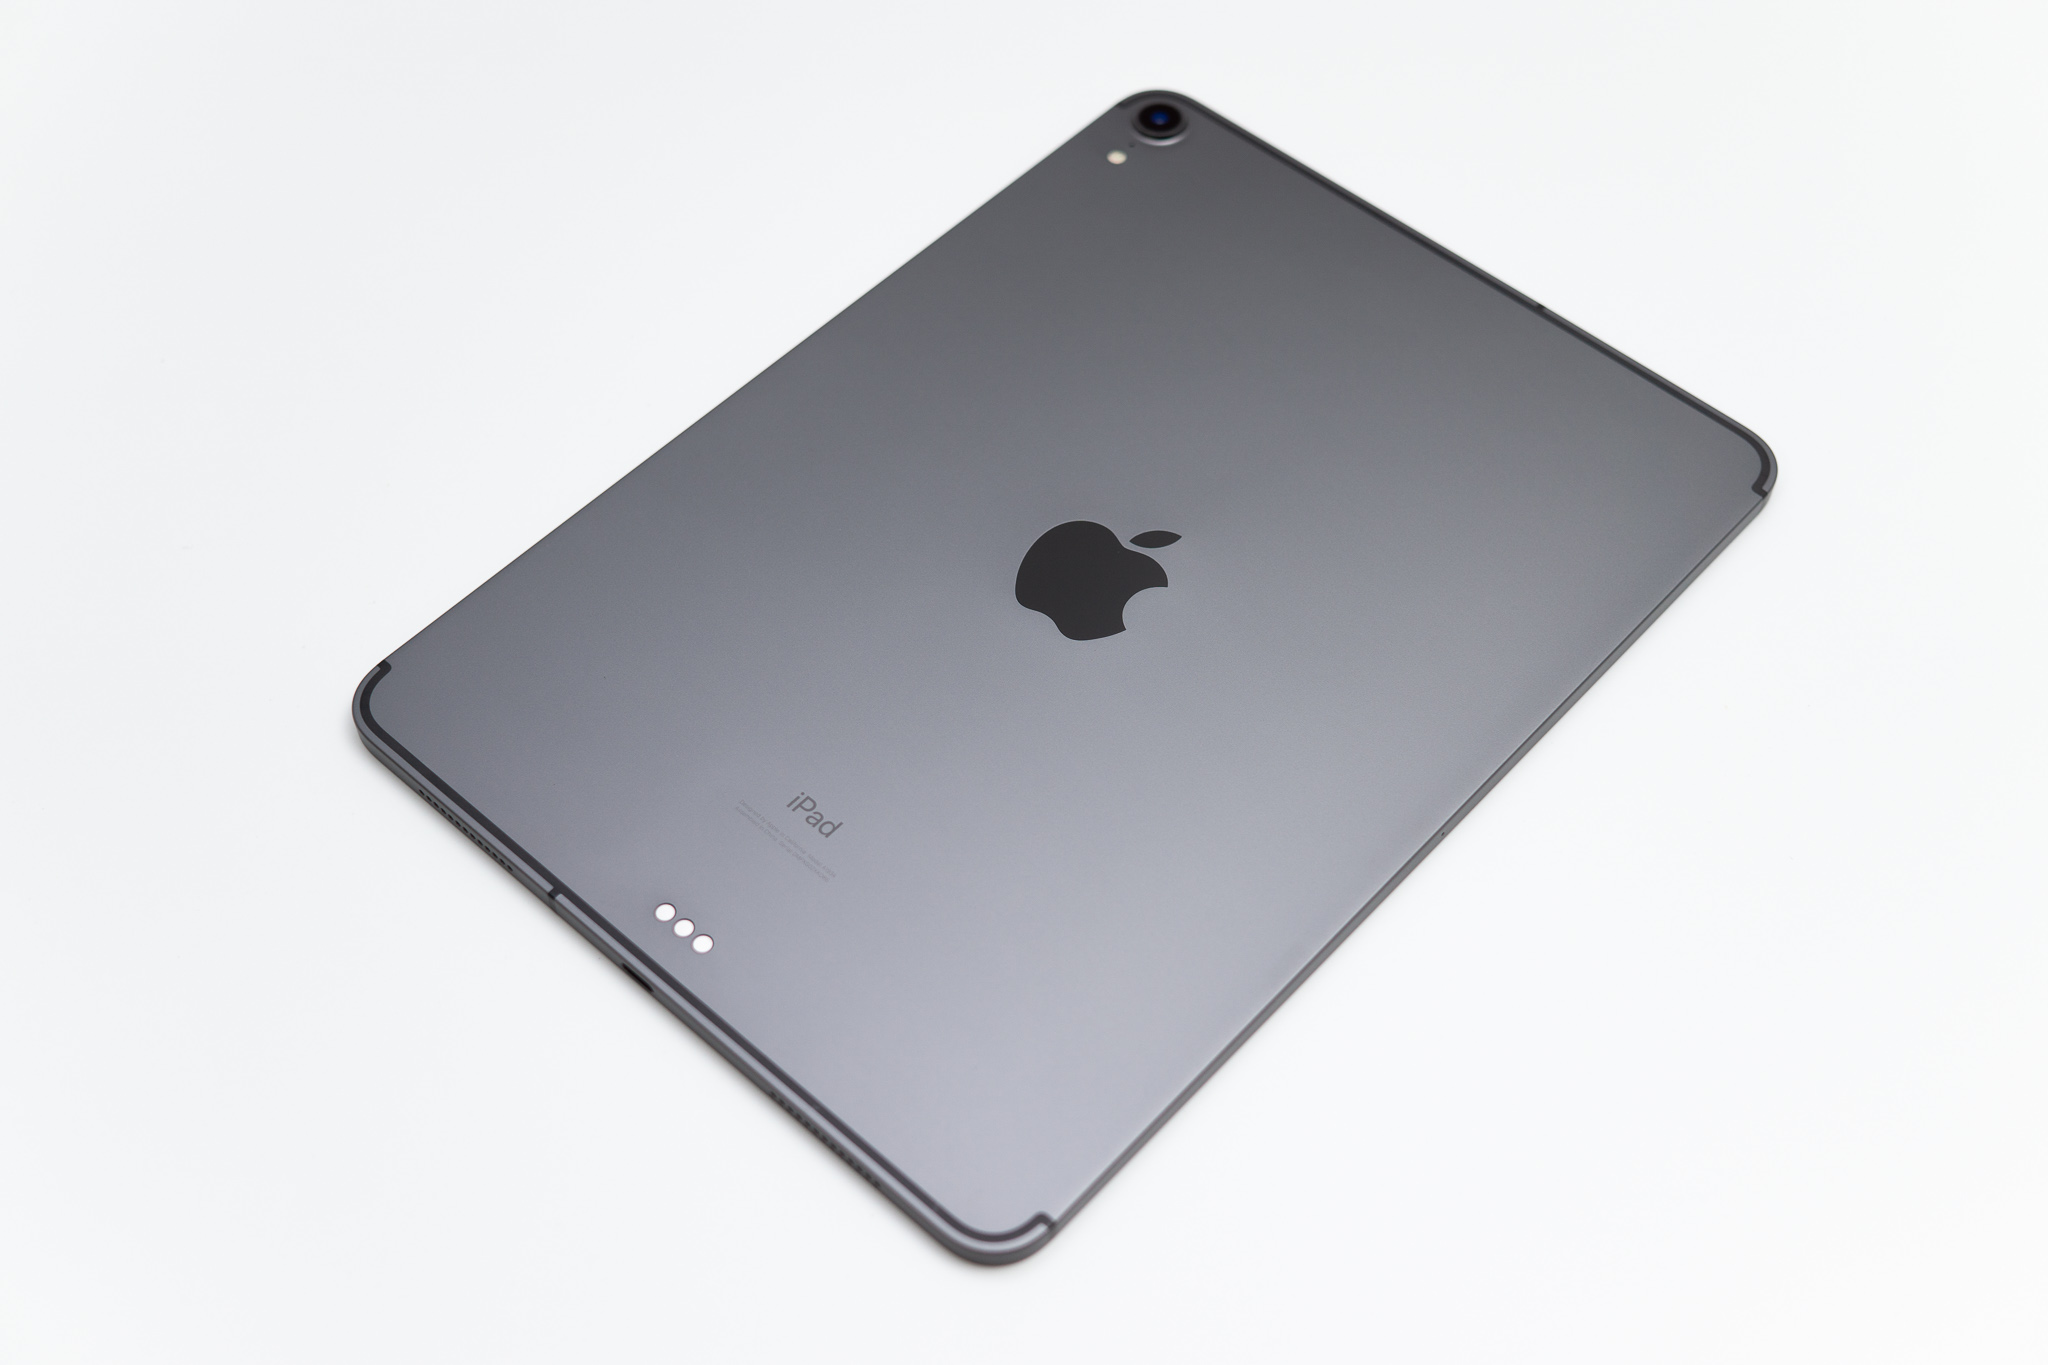 iPad Pro 2018レビュー。11インチは歴代唯一のワイド画面だけに、今後 